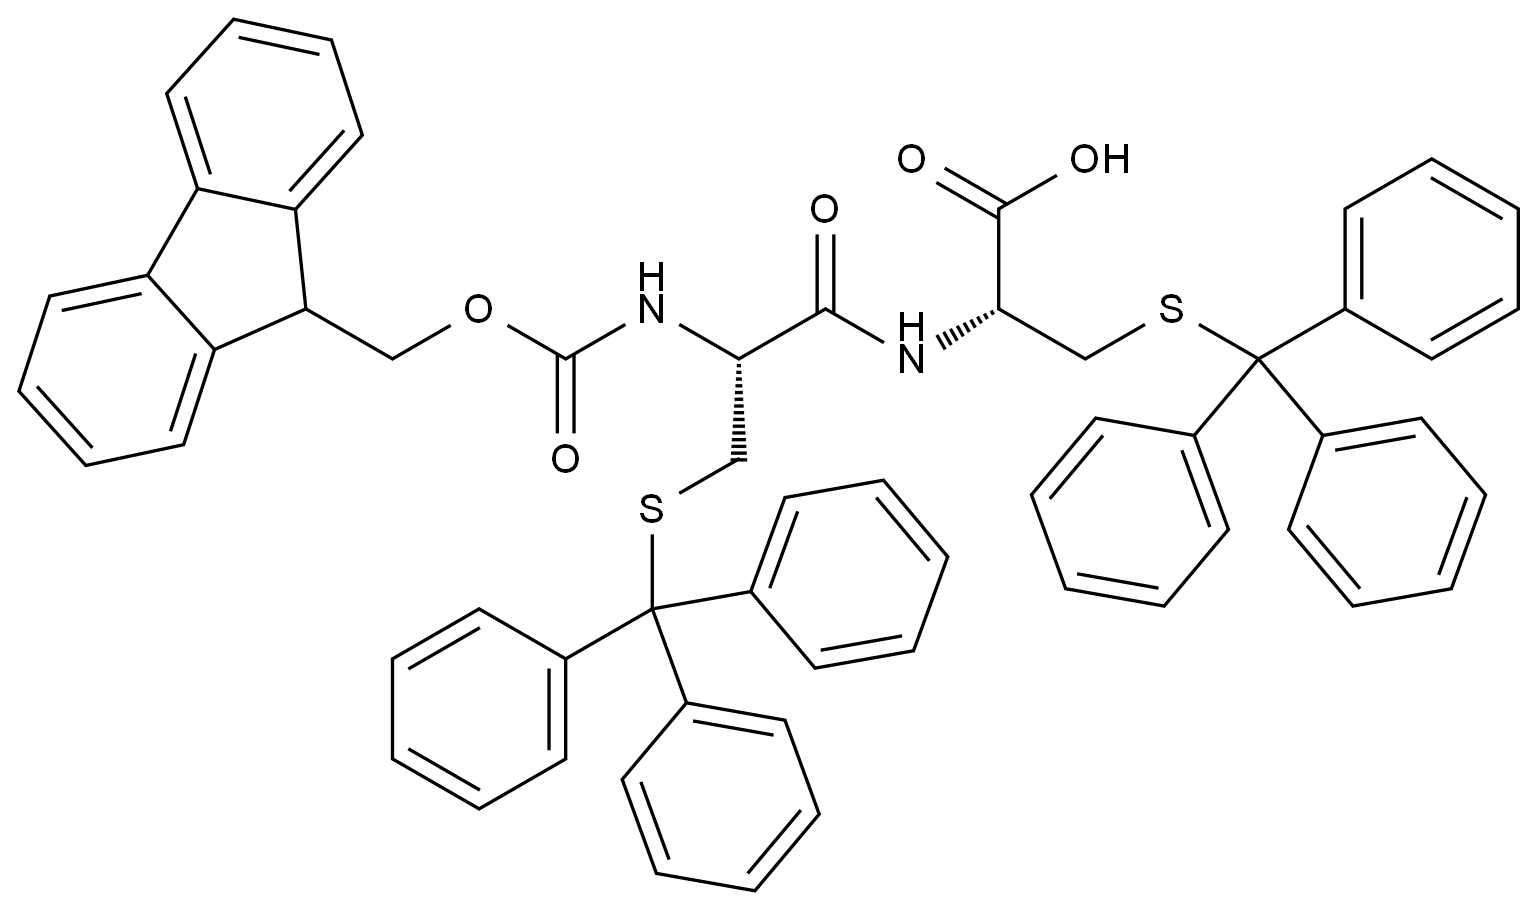 Fmoc-L-半胱氨酸(Trt)-L-半胱氨酸(Trt)-OH